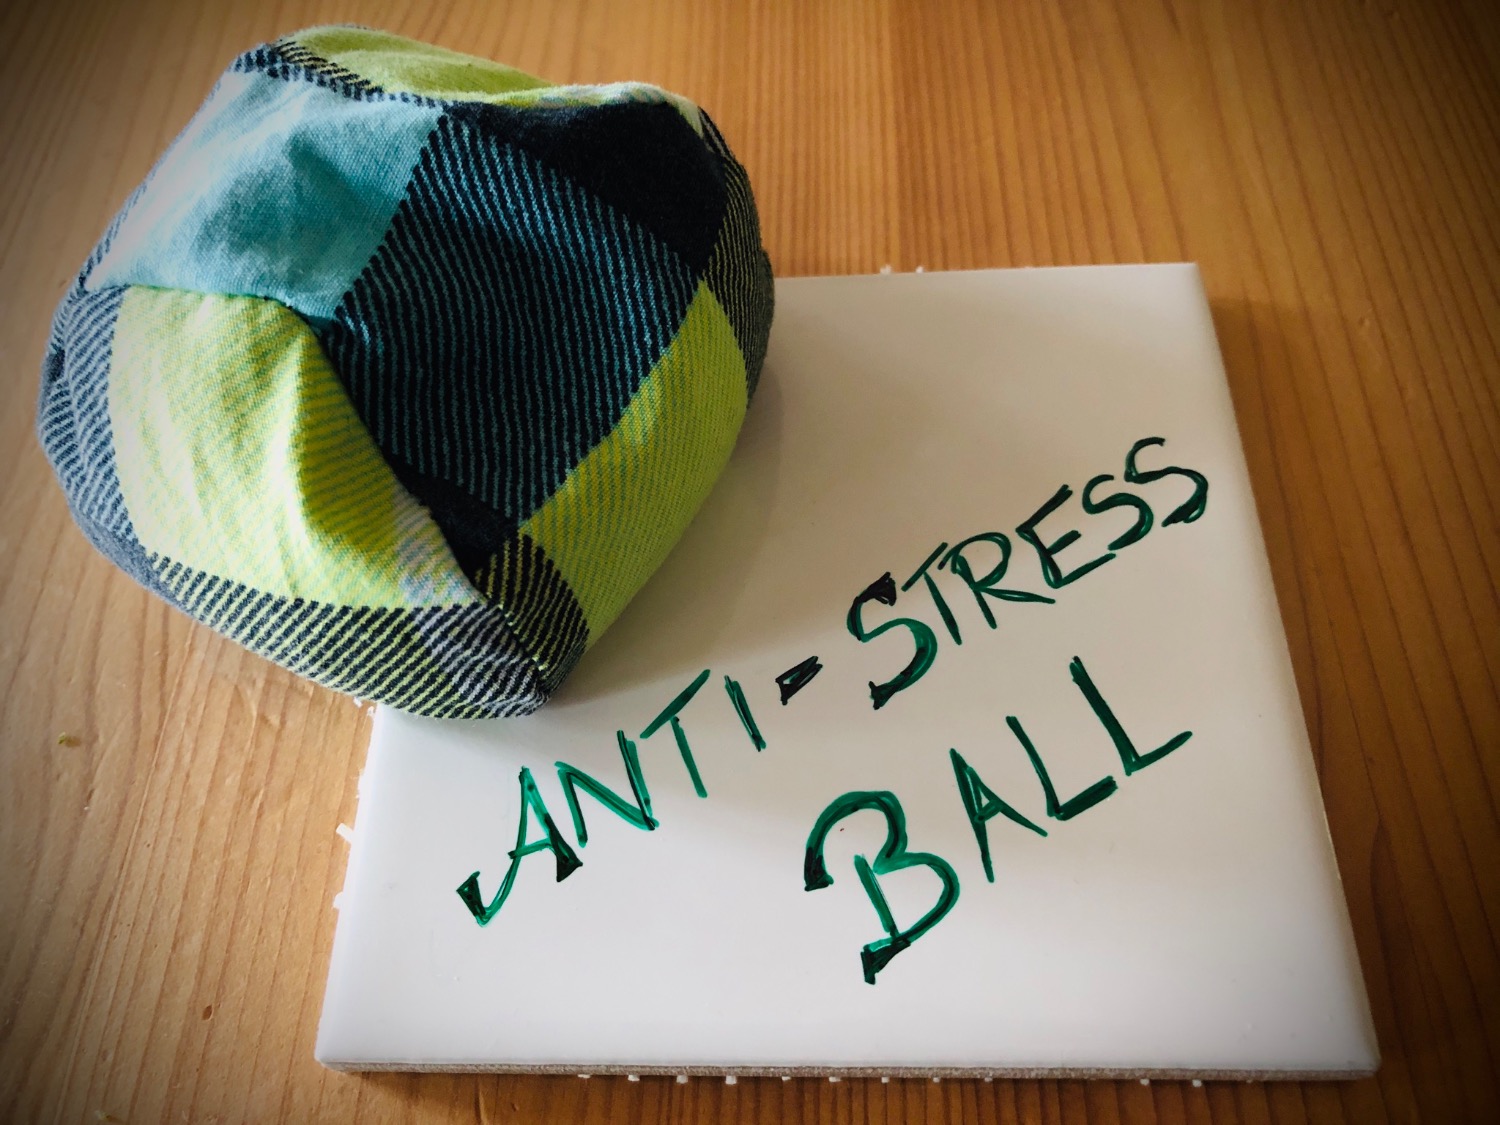 Titelbild zur Idee für die Beschäftigung mit Kindern 'Anti-Stress-Ball nähen'